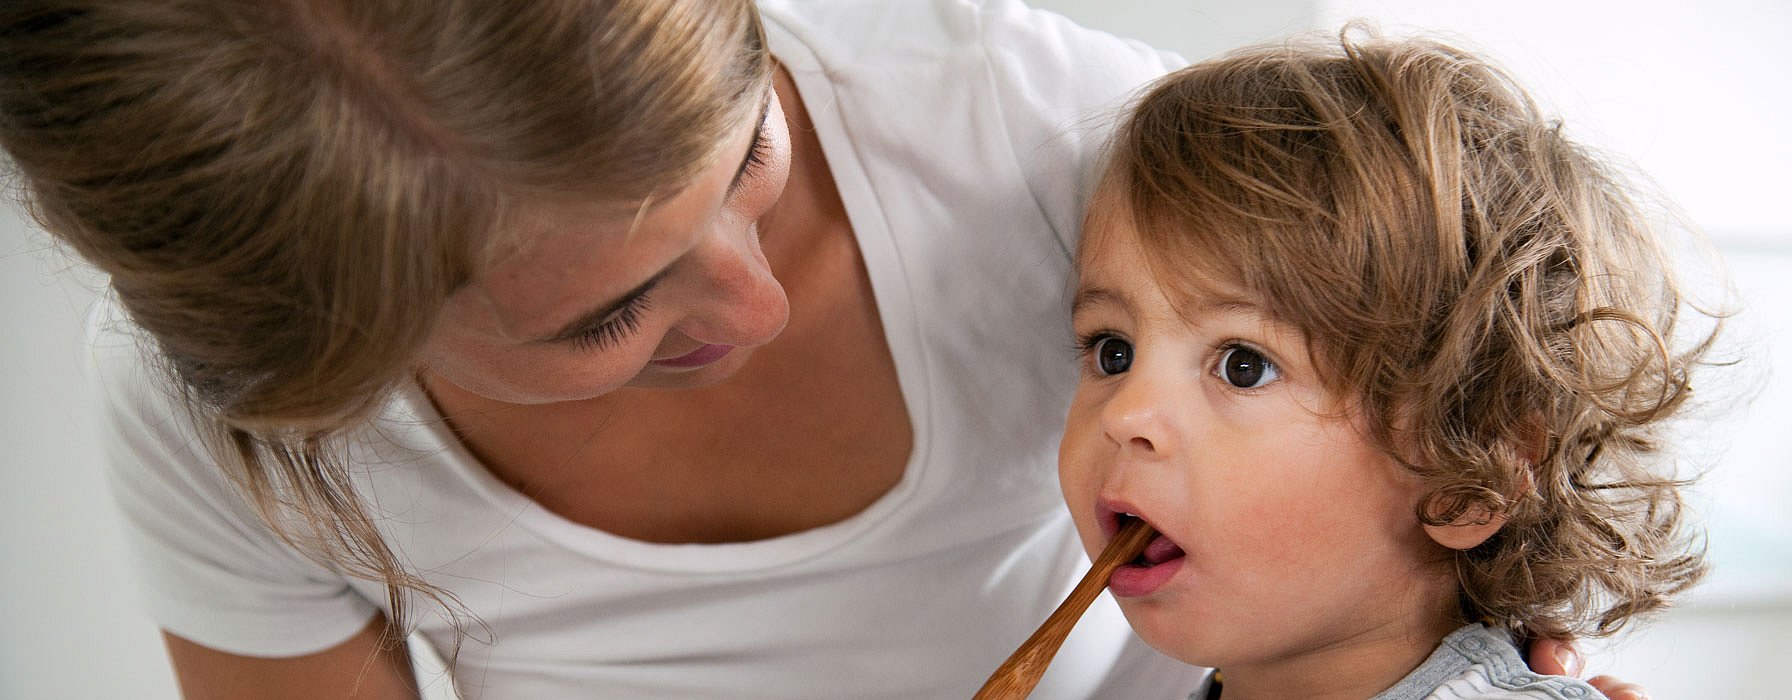 Une mère brosse les dents de son enfant